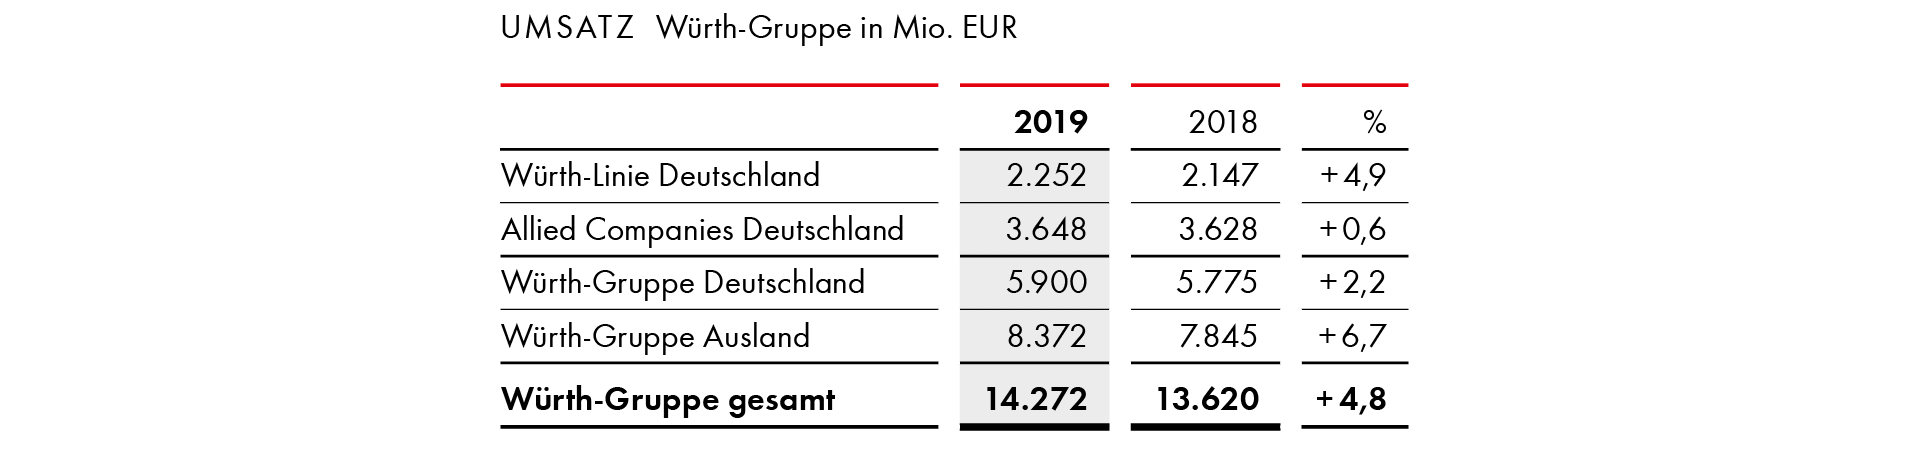 Umsatz Würth-Gruppe in Mio. EUR